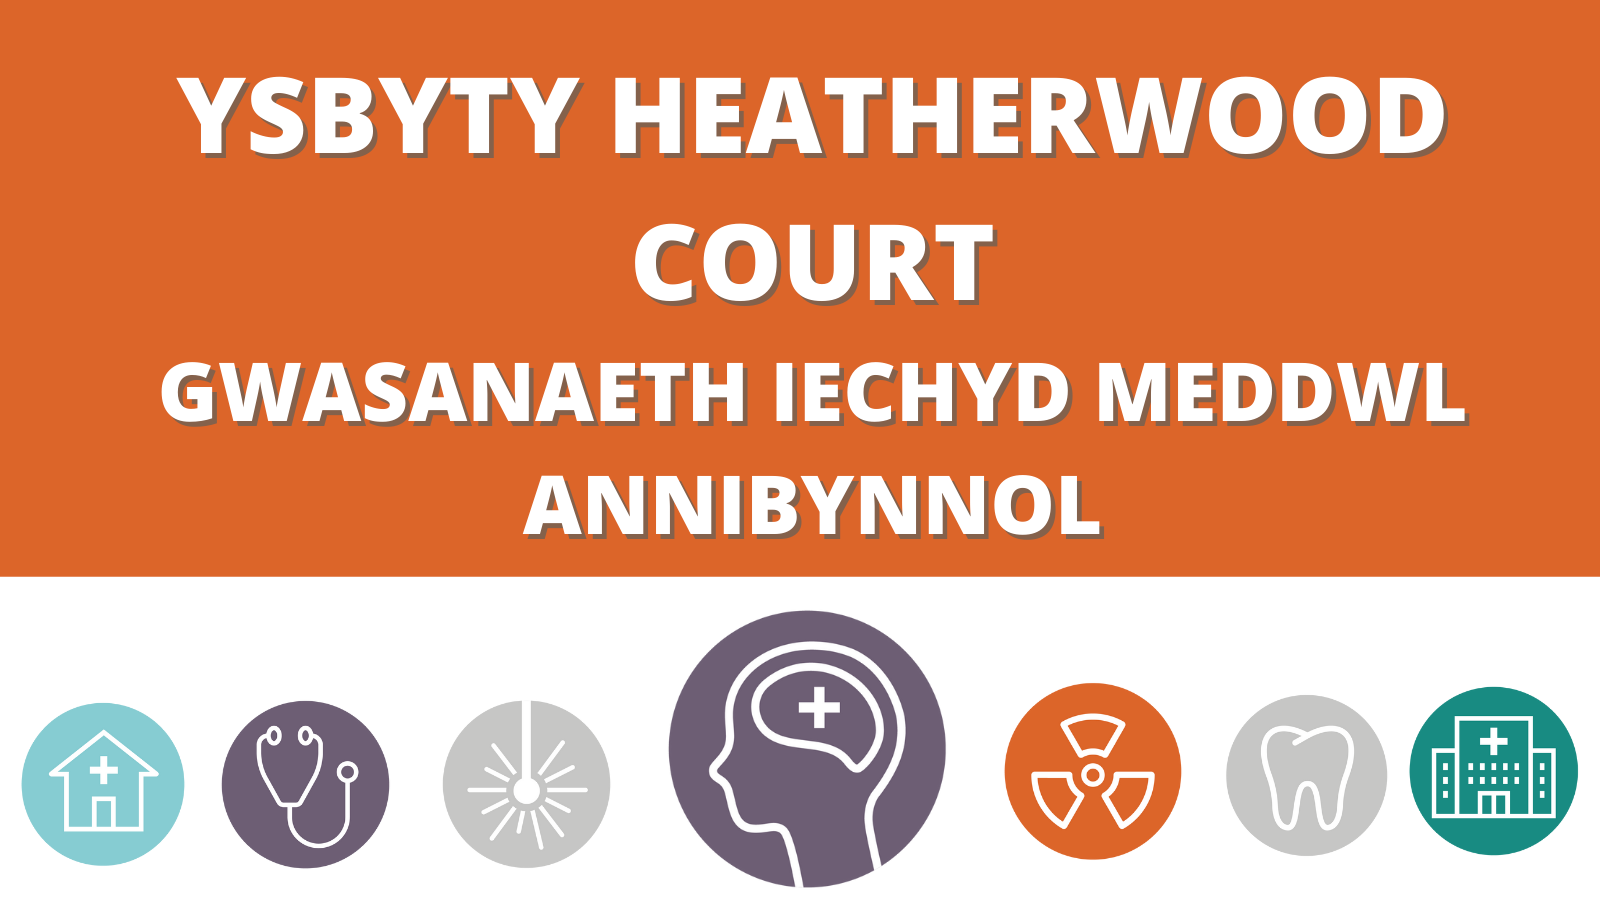 Ysbyty heatherwood Court - Gwasanaeth Iechyd Meddwl Annibynnol